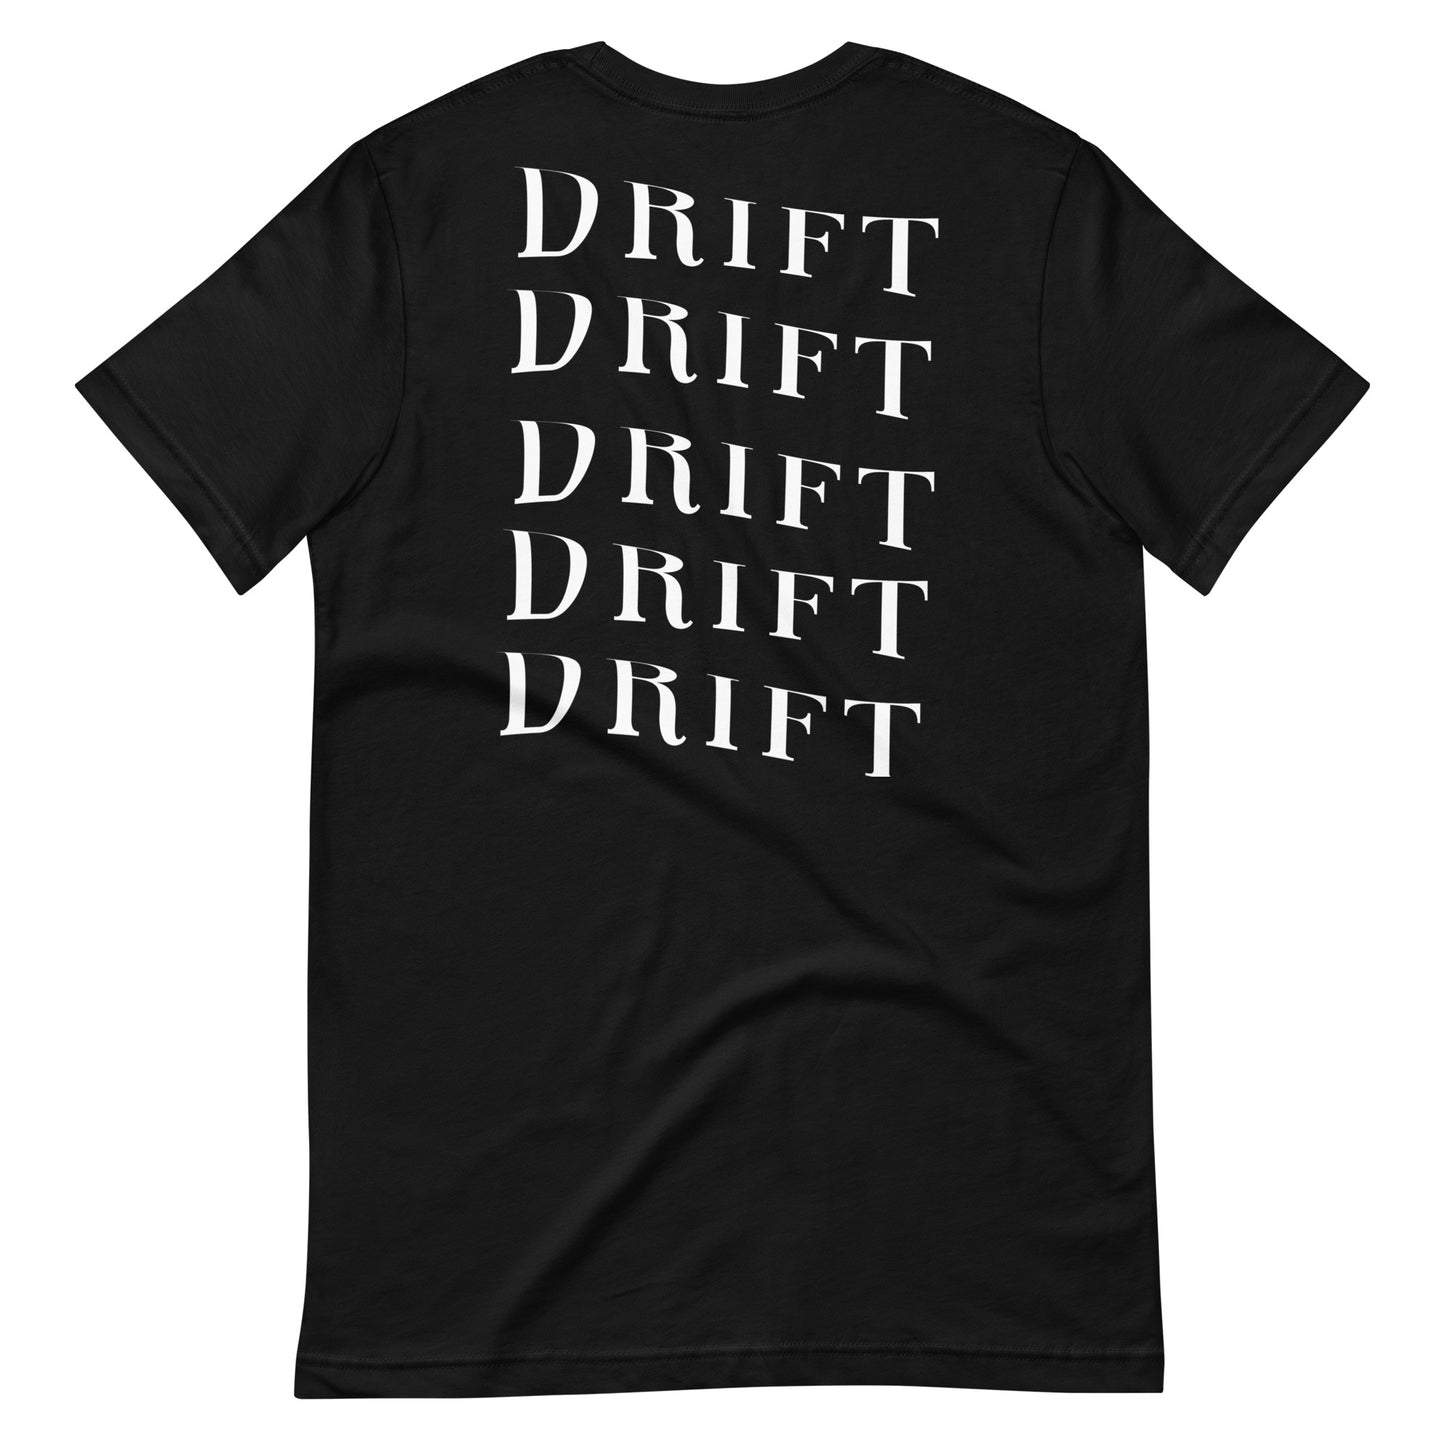 Drift t-shirt